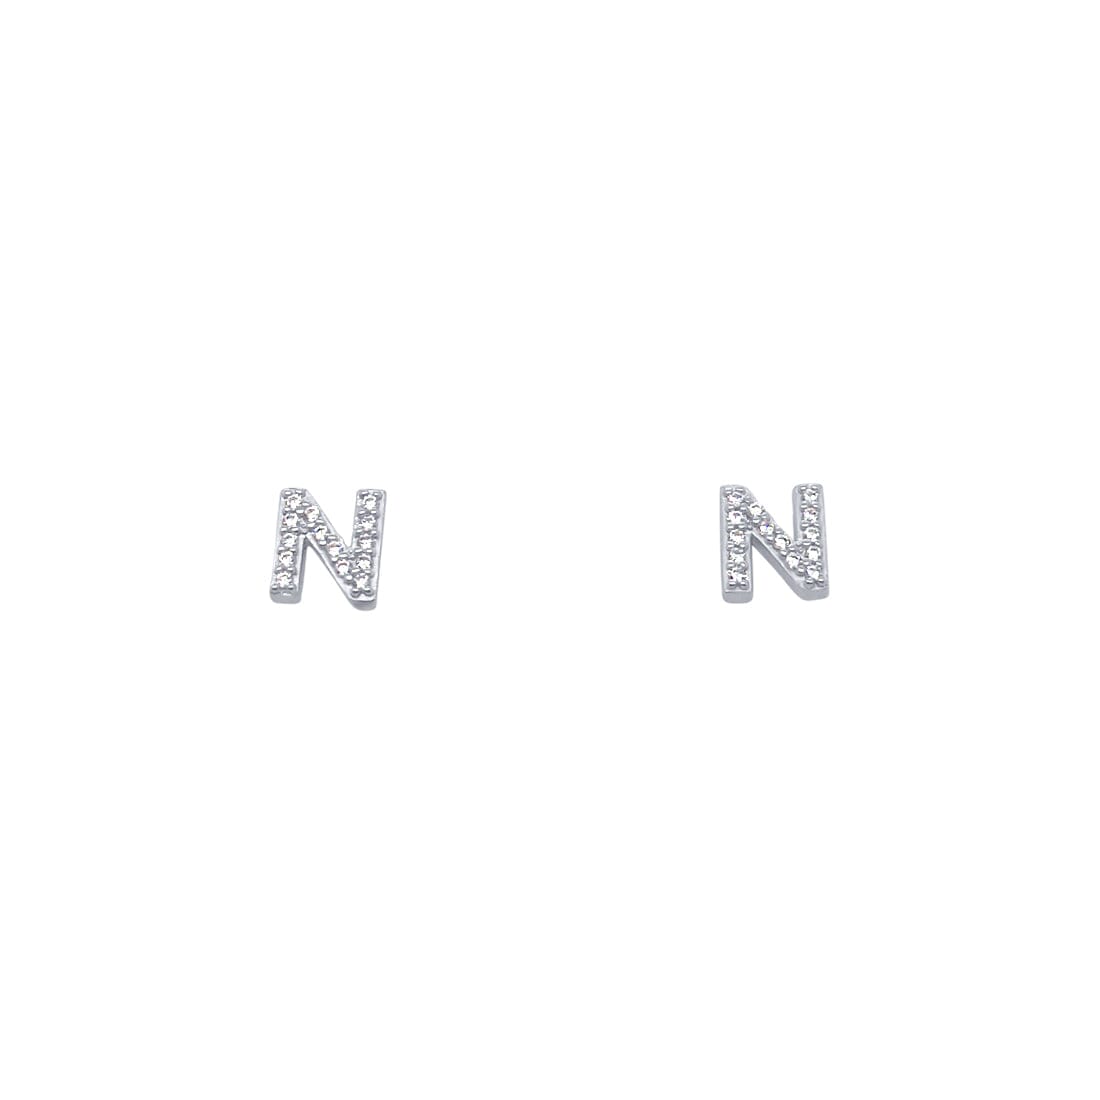 N Initial Stud Stud Earrings with Cubic Zirconia in Sterling Silver Earrings Bevilles 